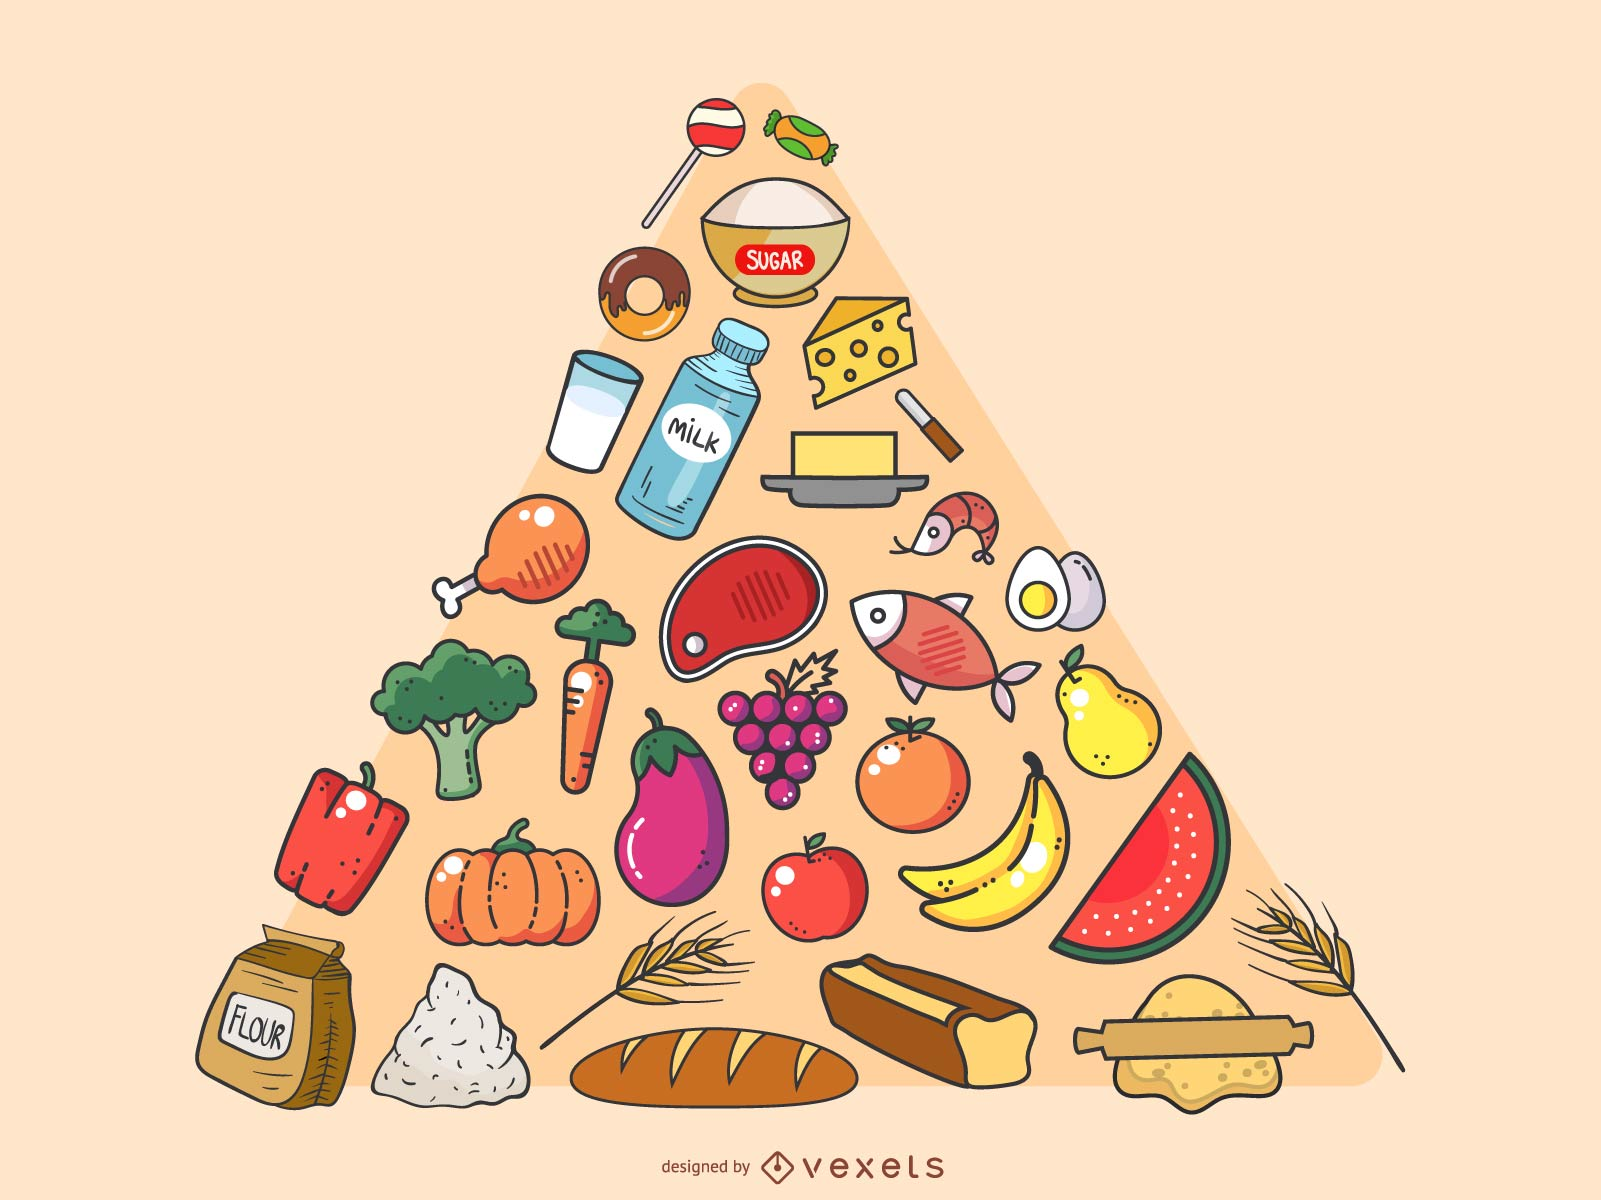 درباره تفاوت مواد غذایی برای افراد با وزنهای مختلف در زبان عربی